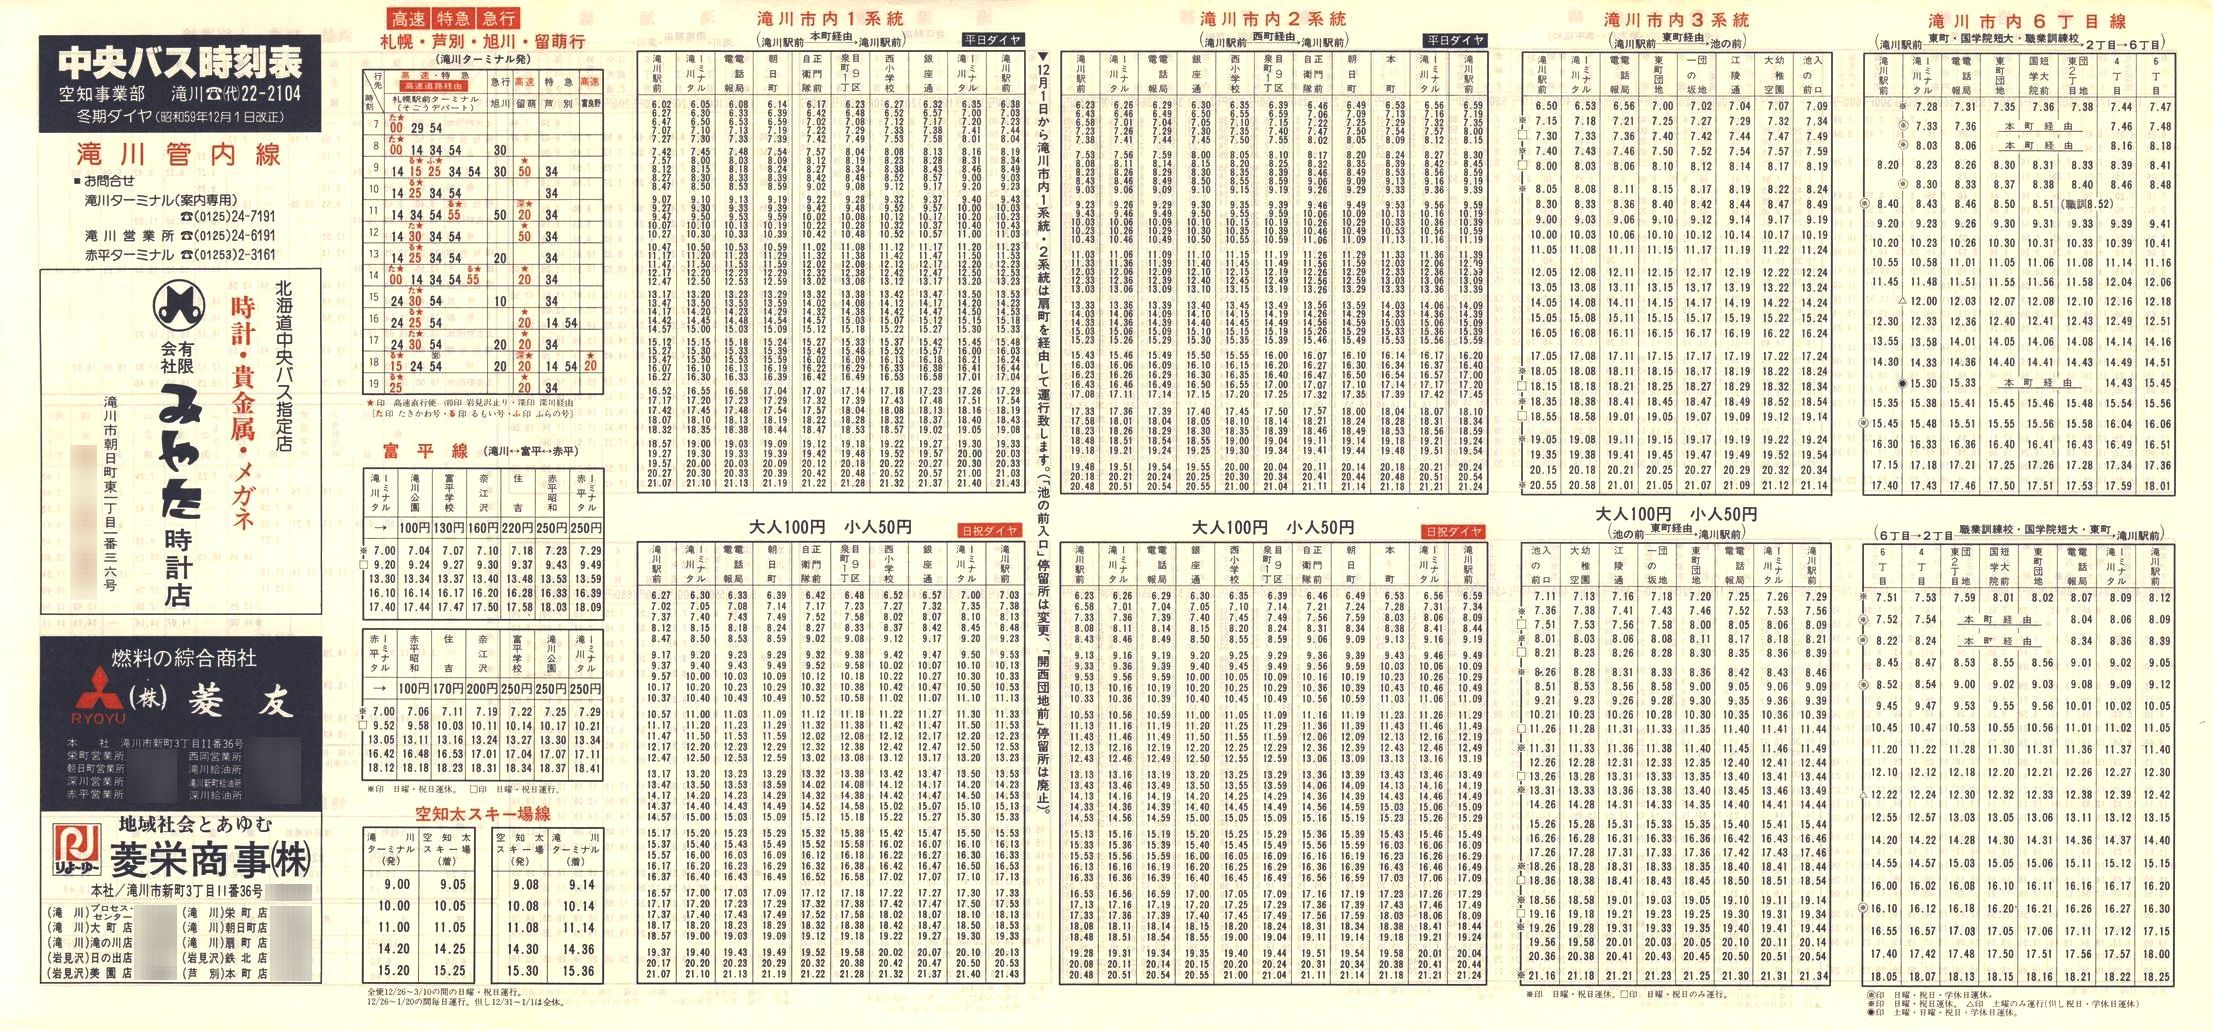 1984-12-01改正_北海道中央バス(空知)_滝川管内線時刻表表面